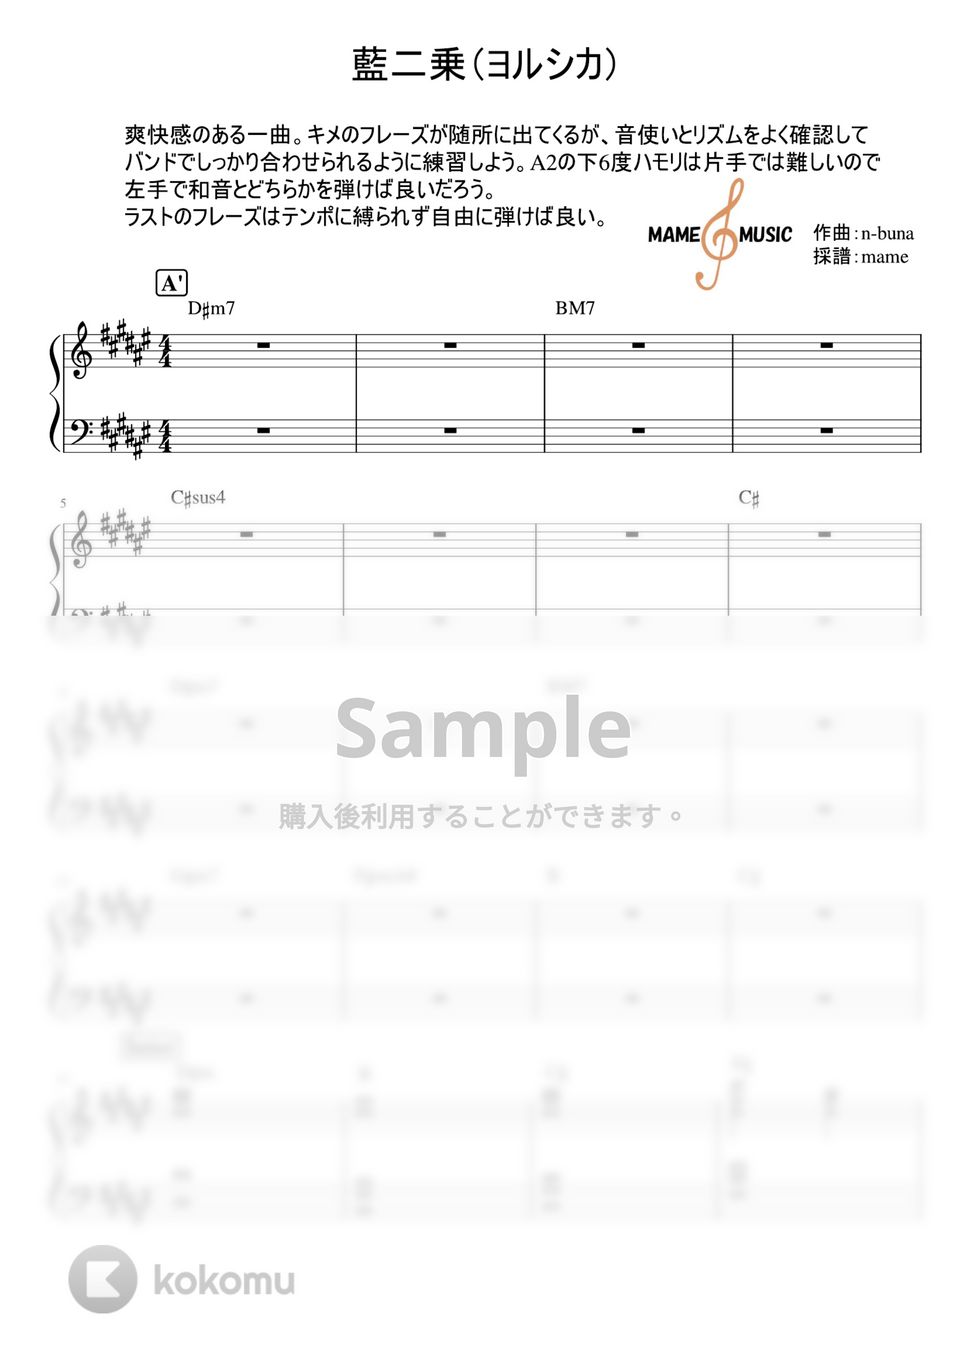 ヨルシカ - 藍二乗（ピアノパート） (ピアノパート) by mame